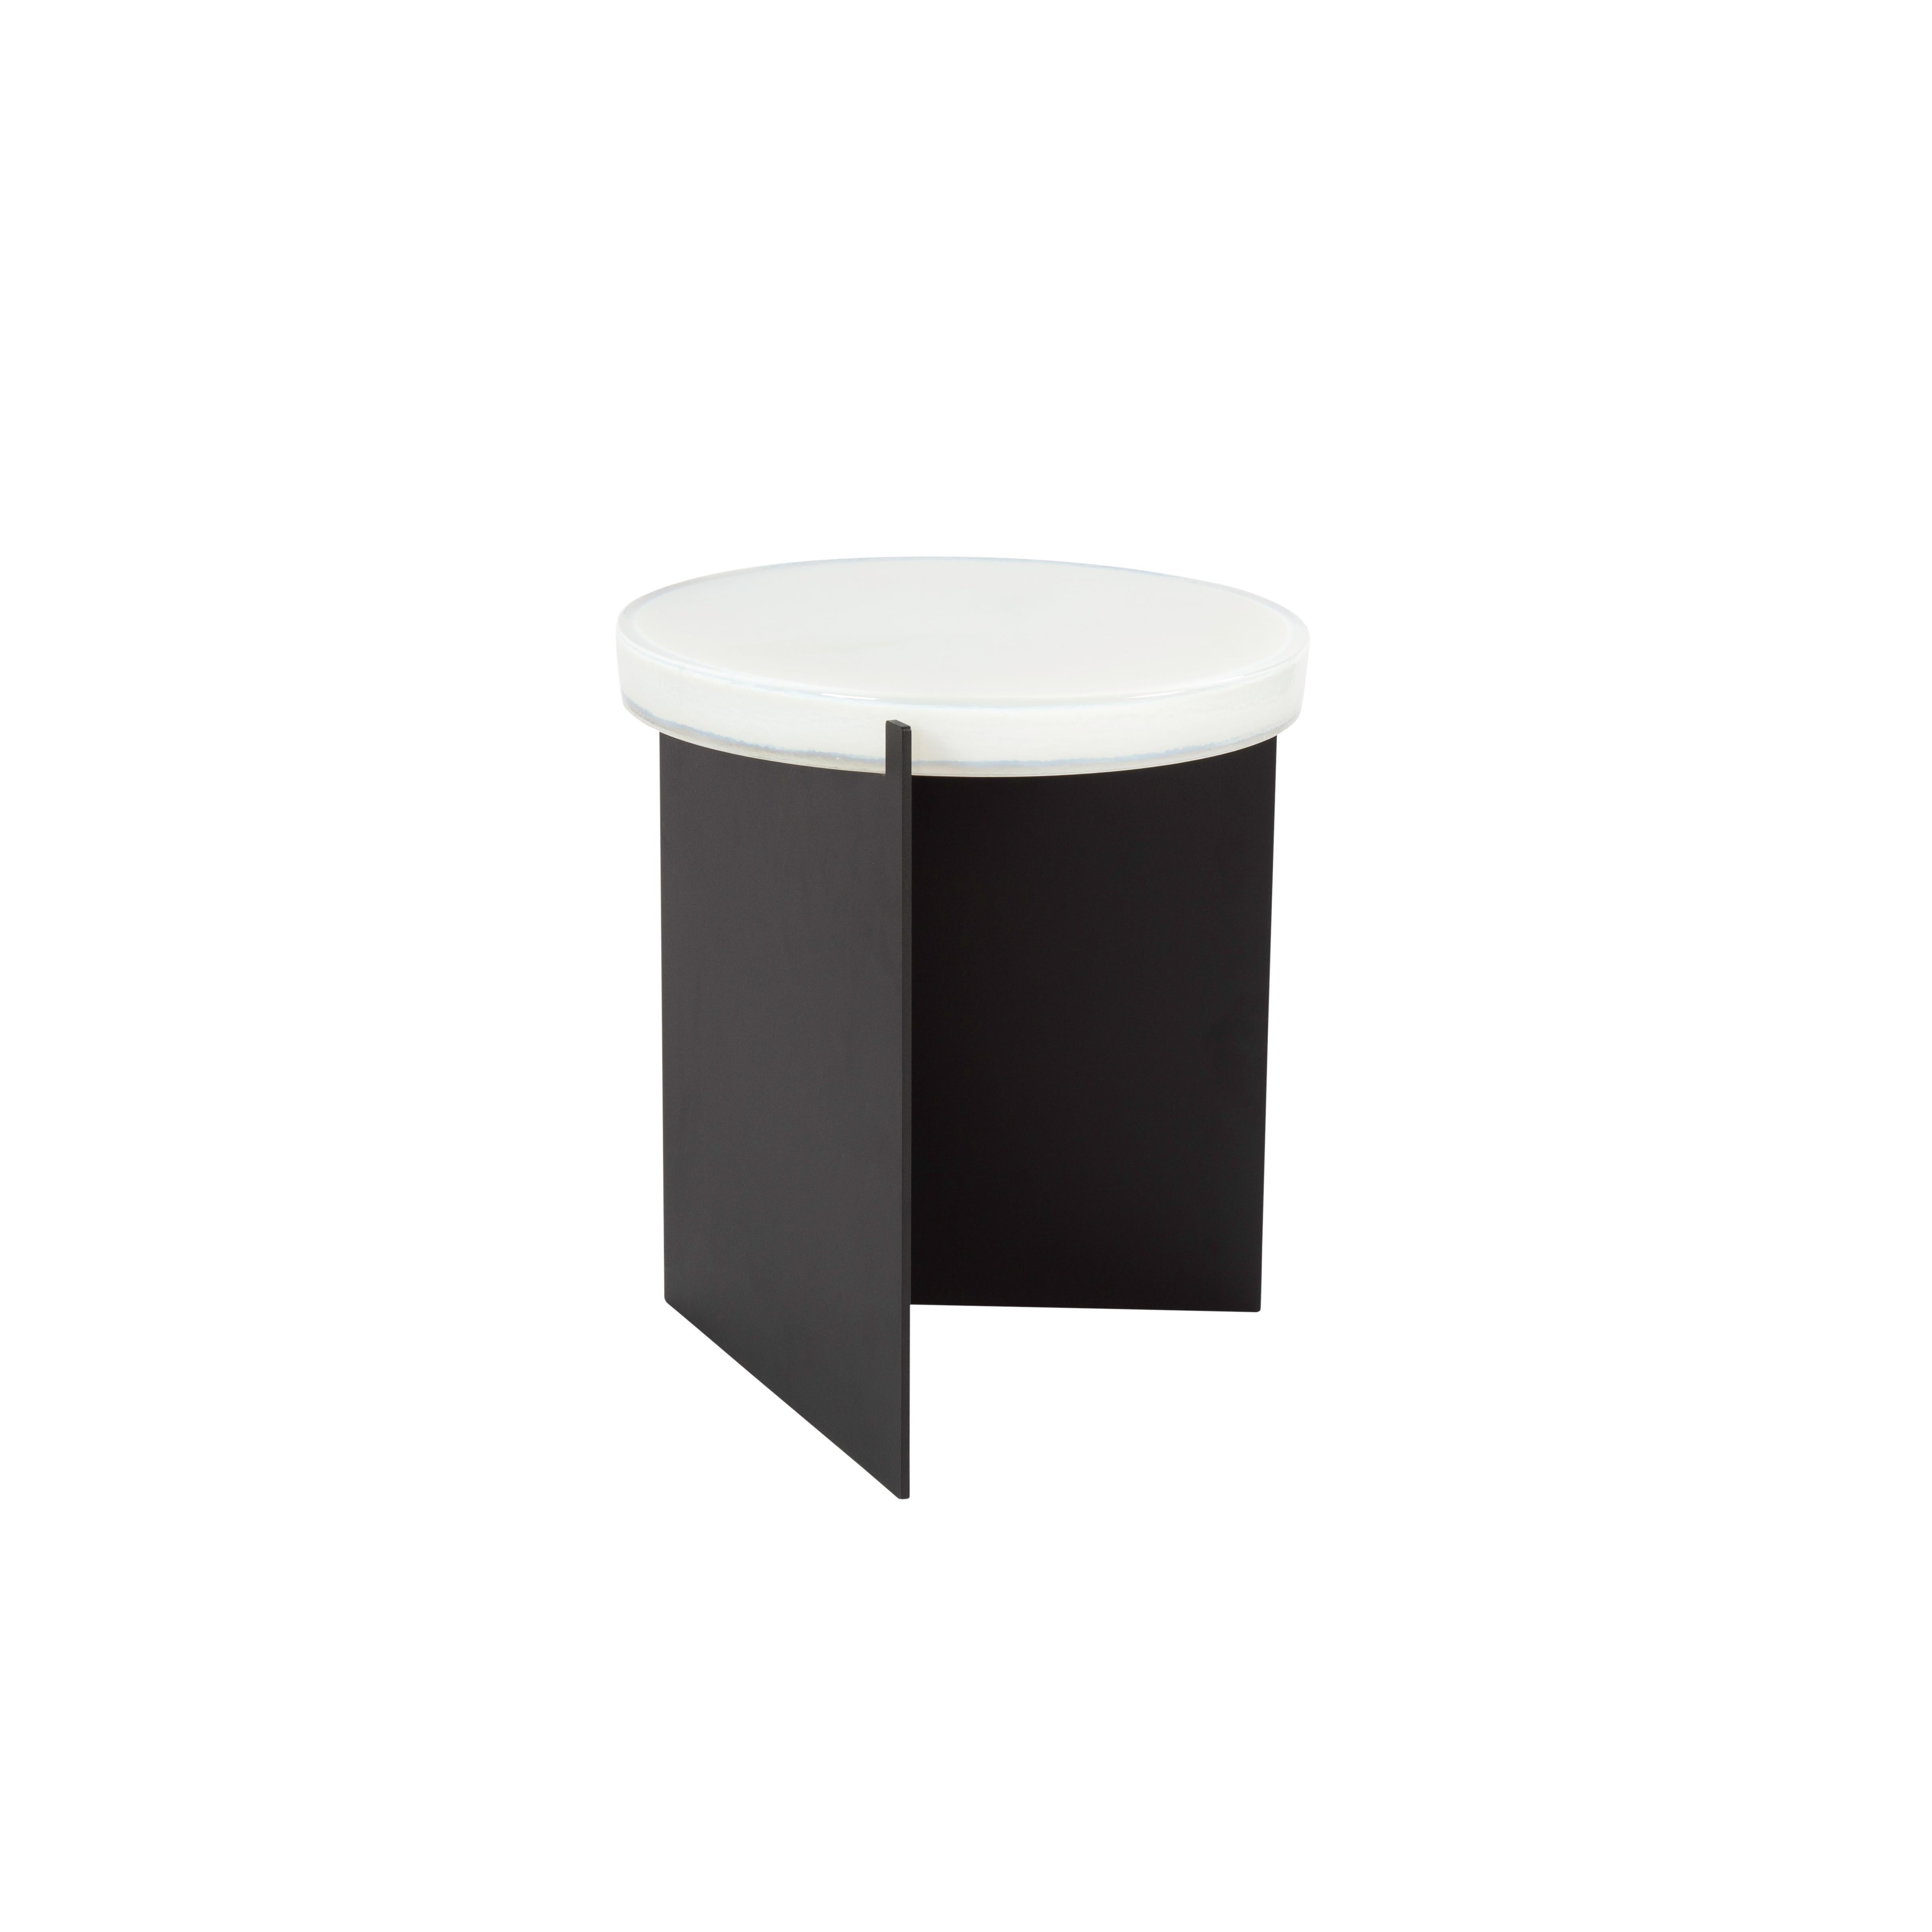 Table d'appoint Alwa one blanc noir par Pulpo.
Dimensions : D38 x H44 cm.
MATERIAL : Verre moulé ; acier peint par poudrage. 

Disponible également en différentes finitions. 

Normalement, le verre est considéré comme un matériau léger aux arêtes